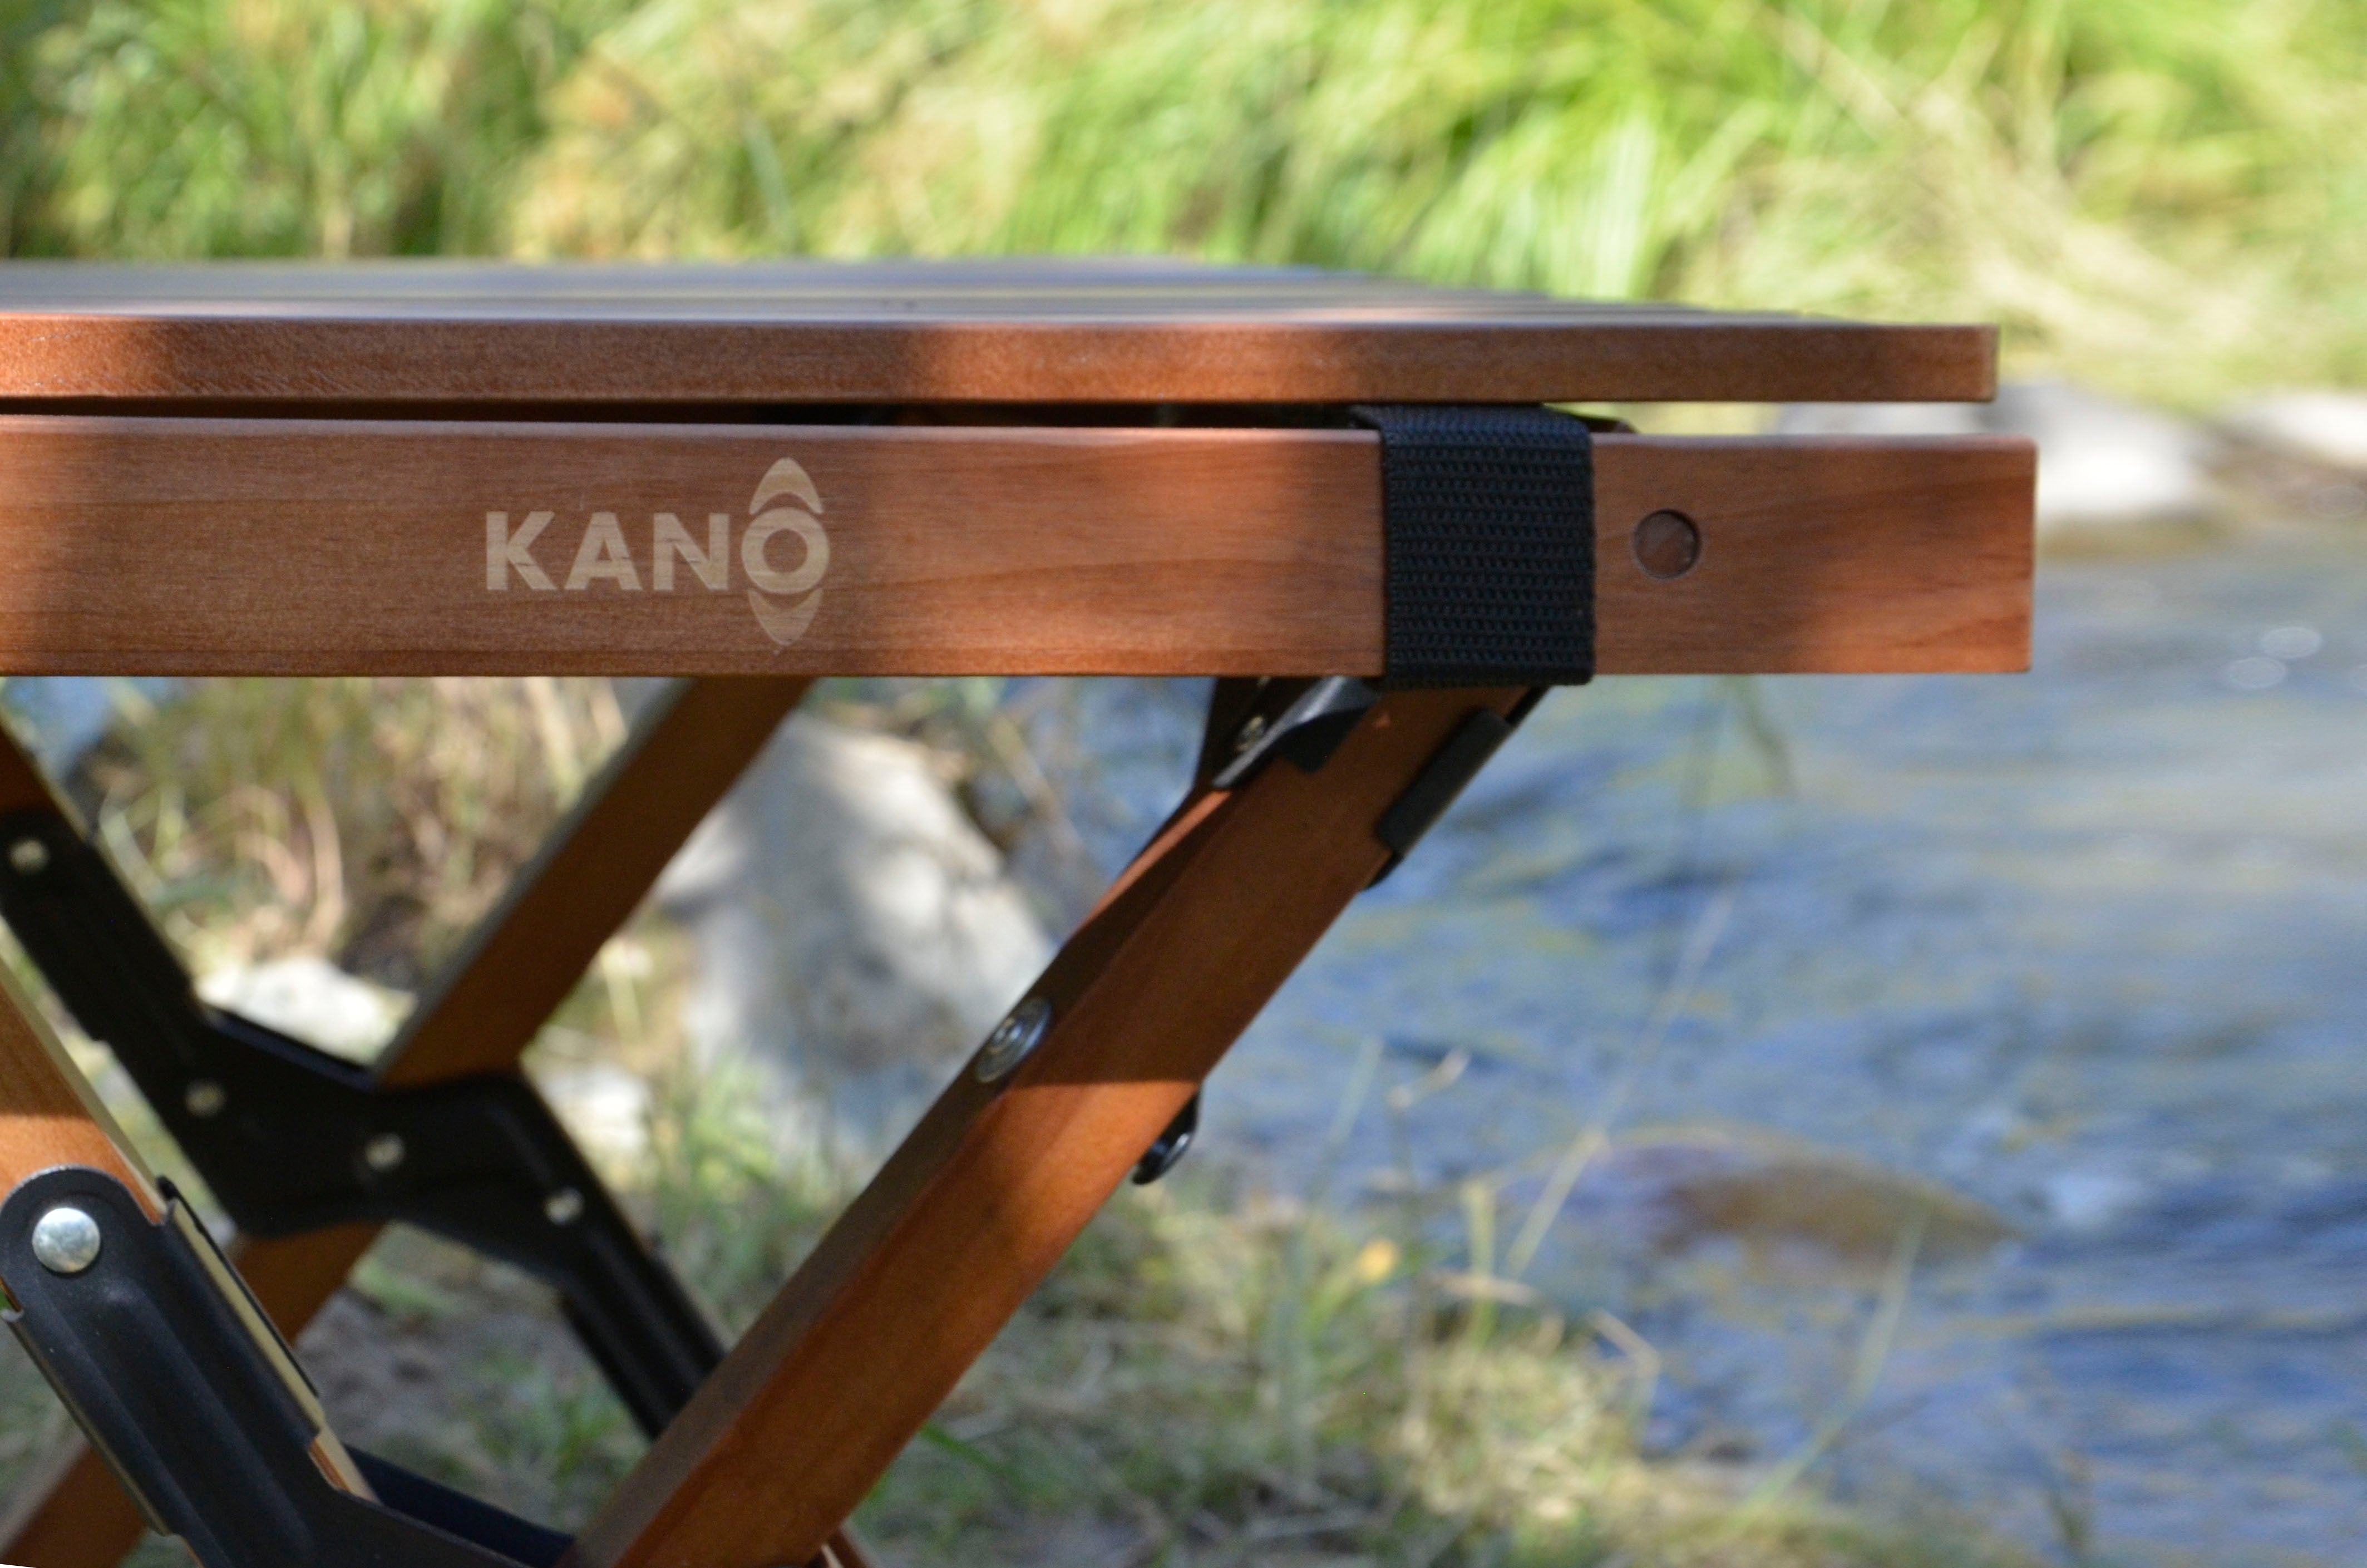 Accesorios para Camping  Kano – Etiquetado Accesorios Camping– Página 2  – Kano Outdoors